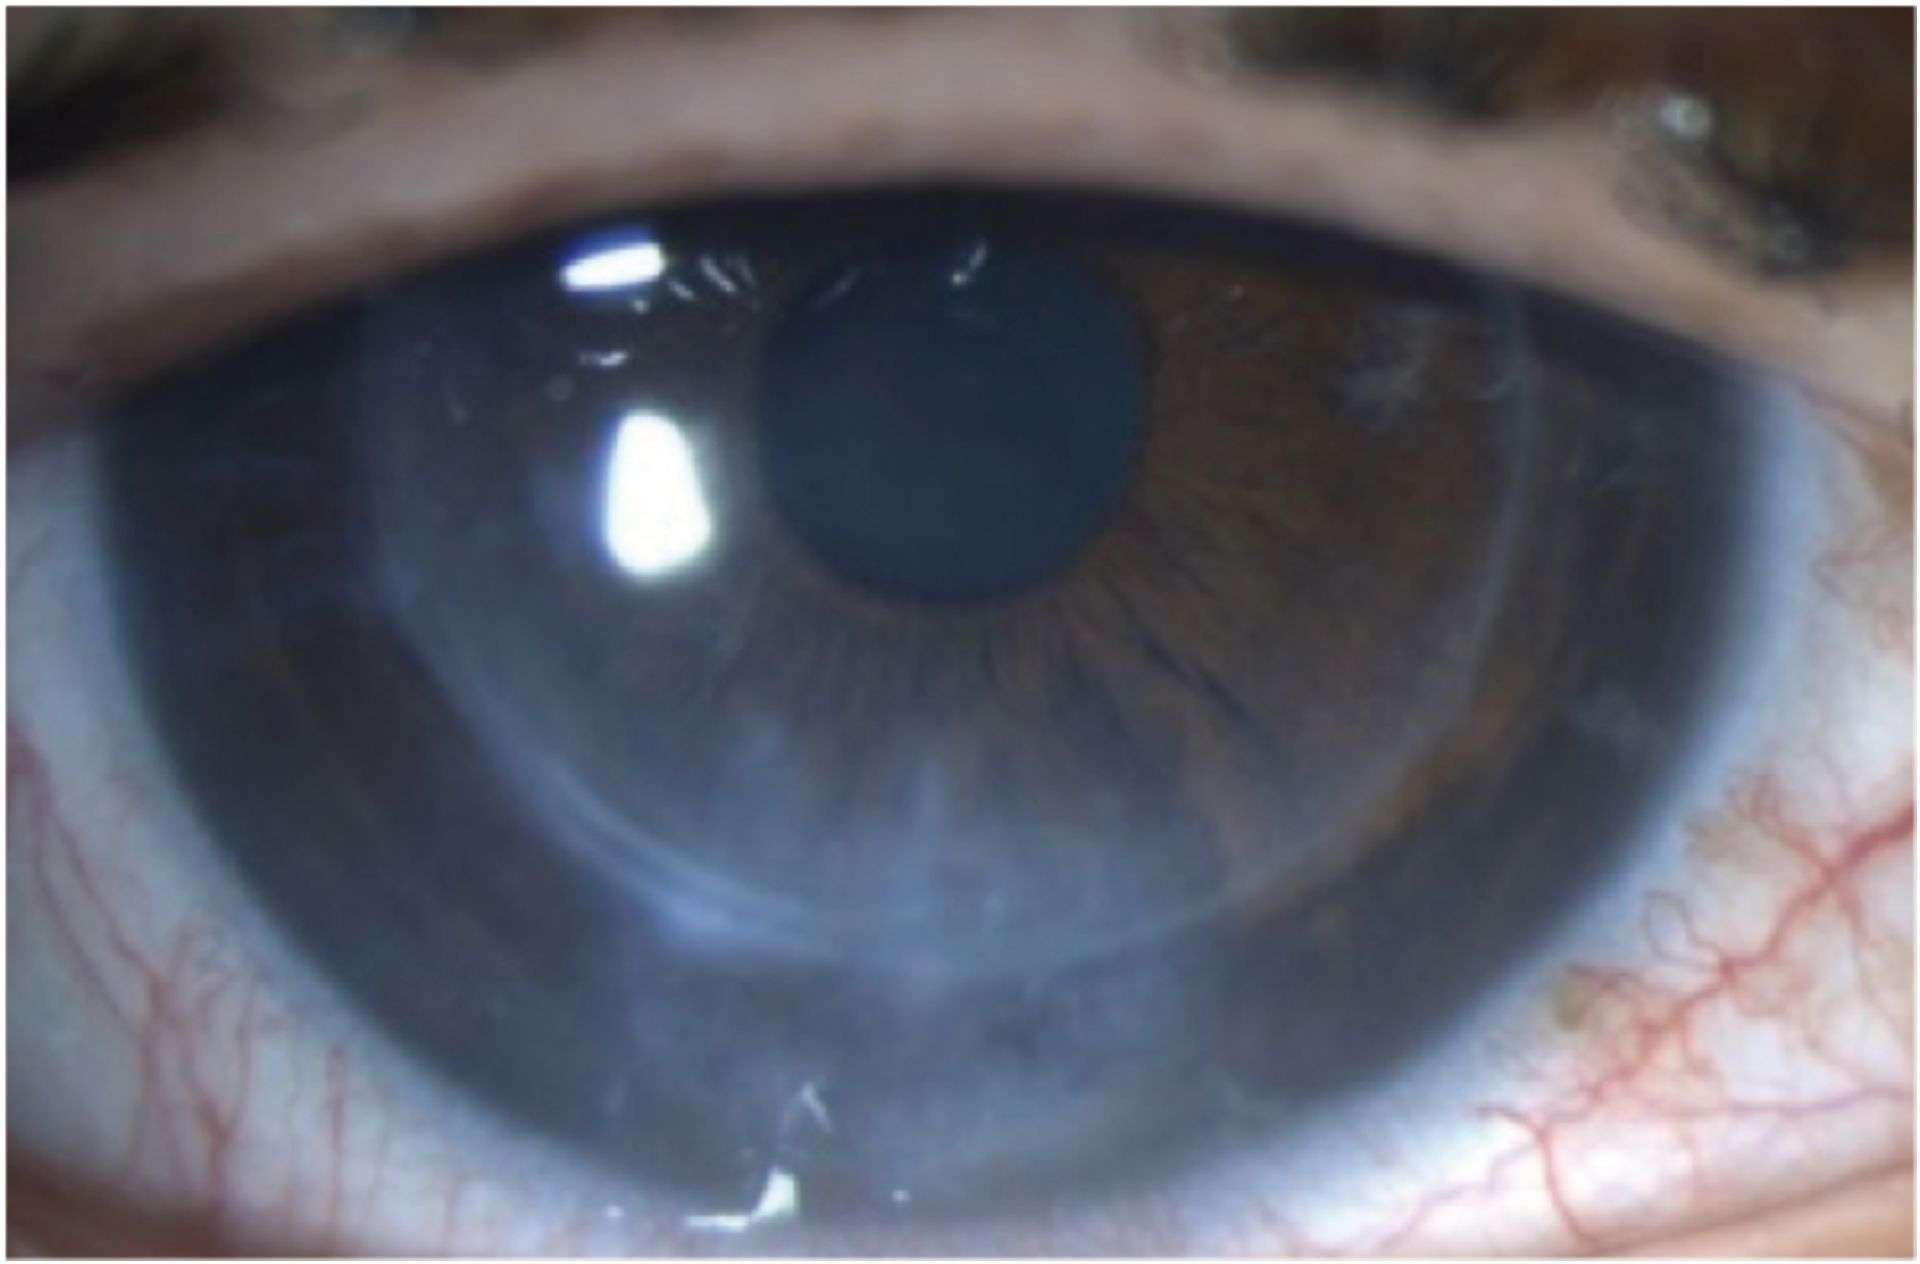 Figure 1A. Photographie de l’examen initial de l’œil gauche.
